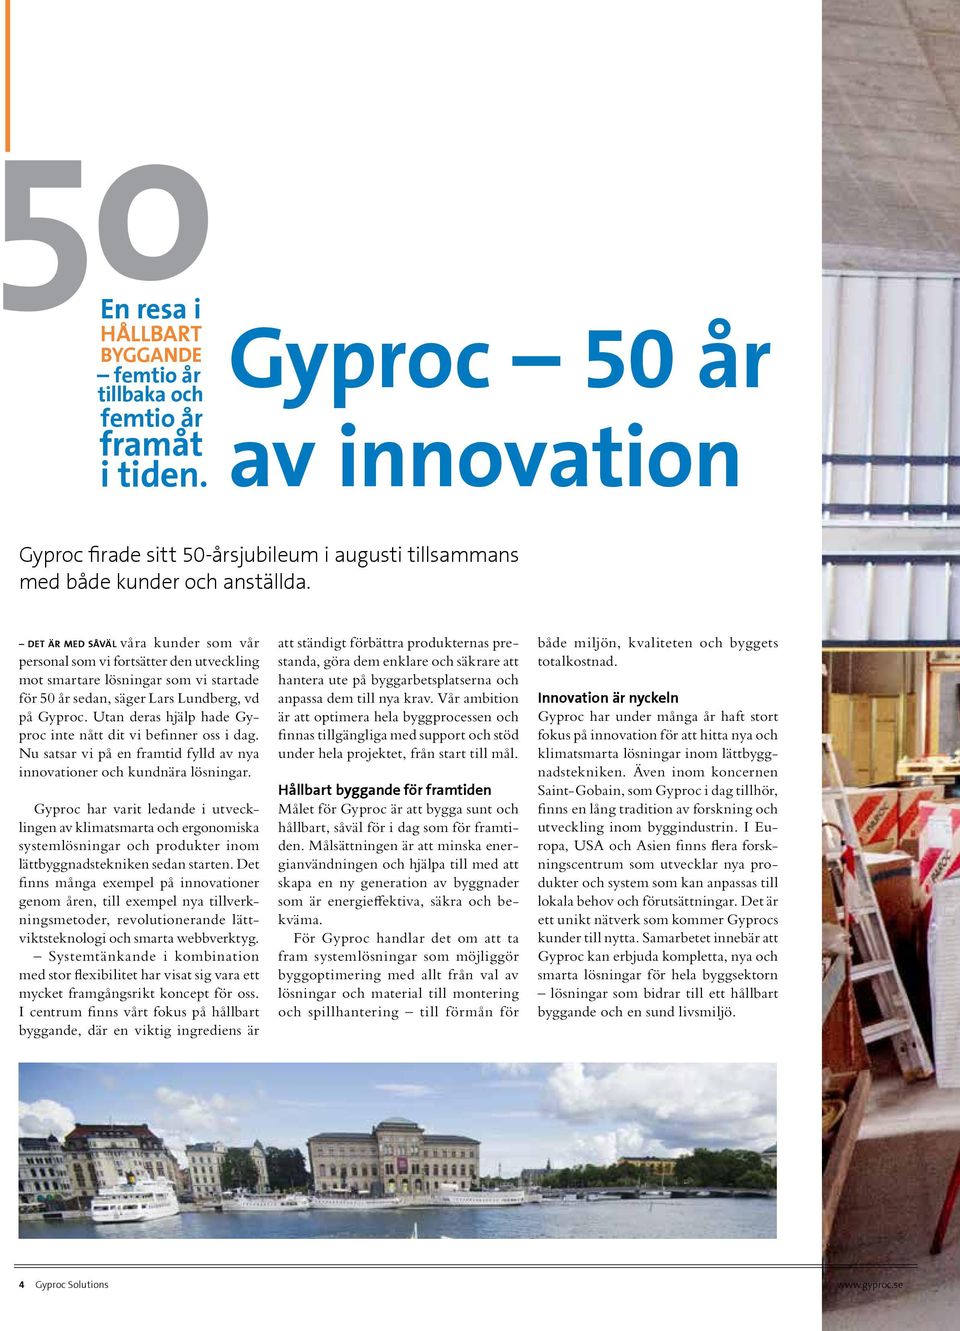 Utan deras hjälp hade Gyproc inte nått dit vi befinner oss i dag. Nu satsar vi på en framtid fylld av nya innovationer och kundnära lösningar.